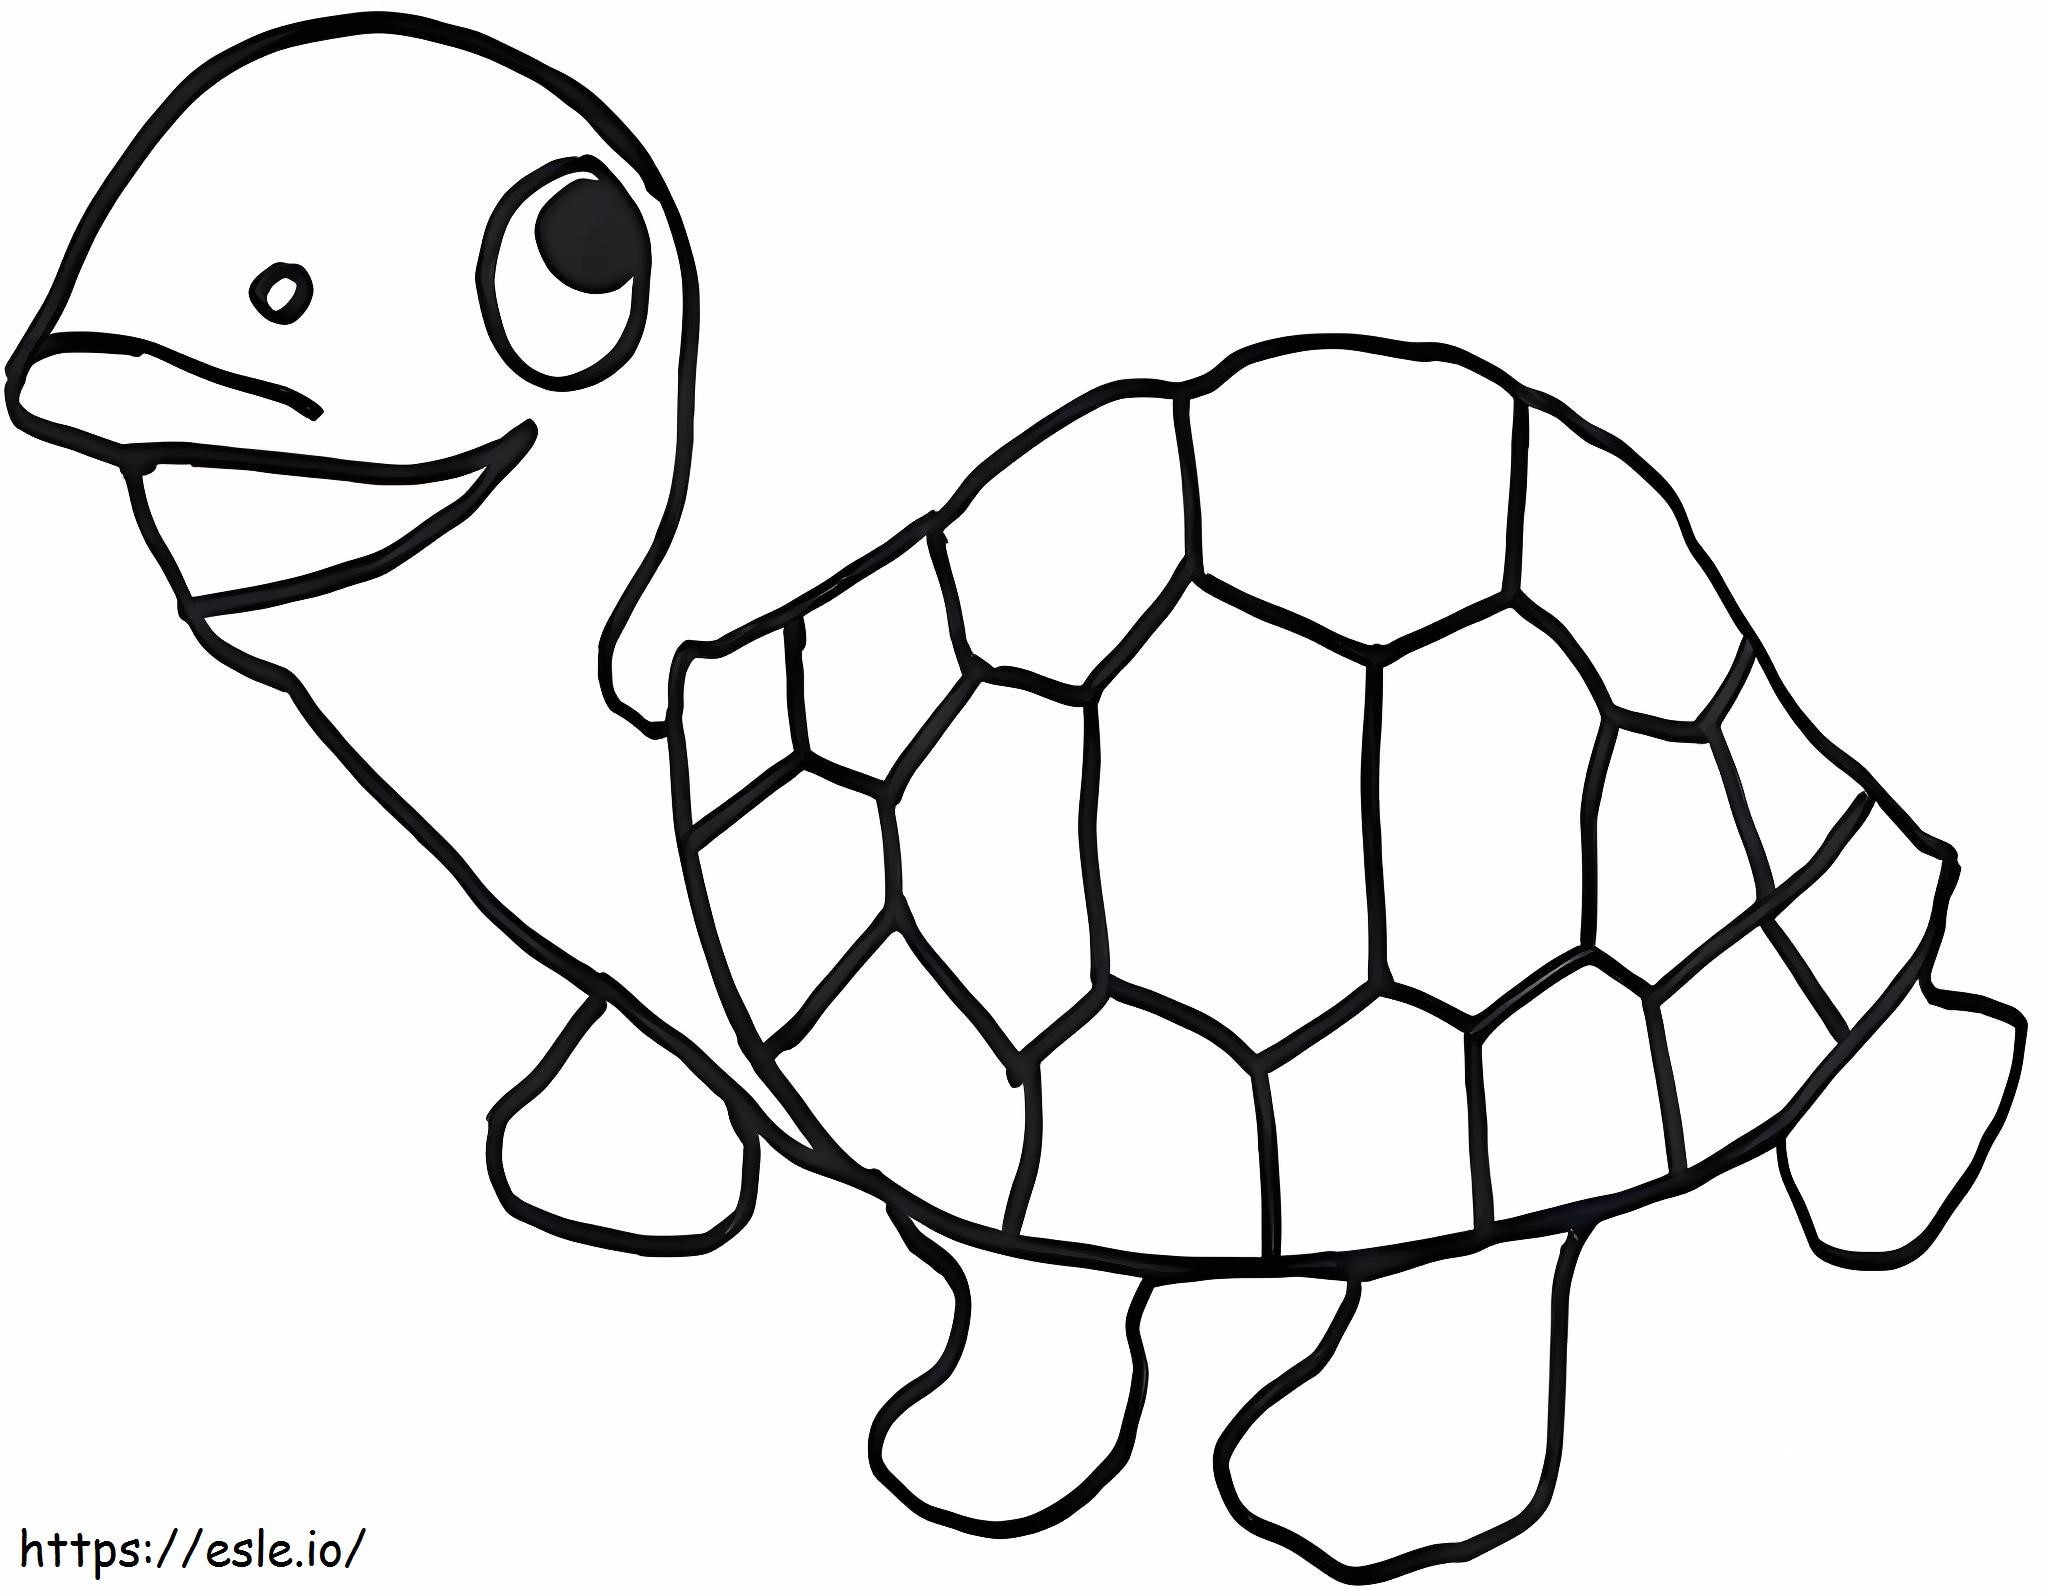 Schildkrötenzeichnung ausmalbilder